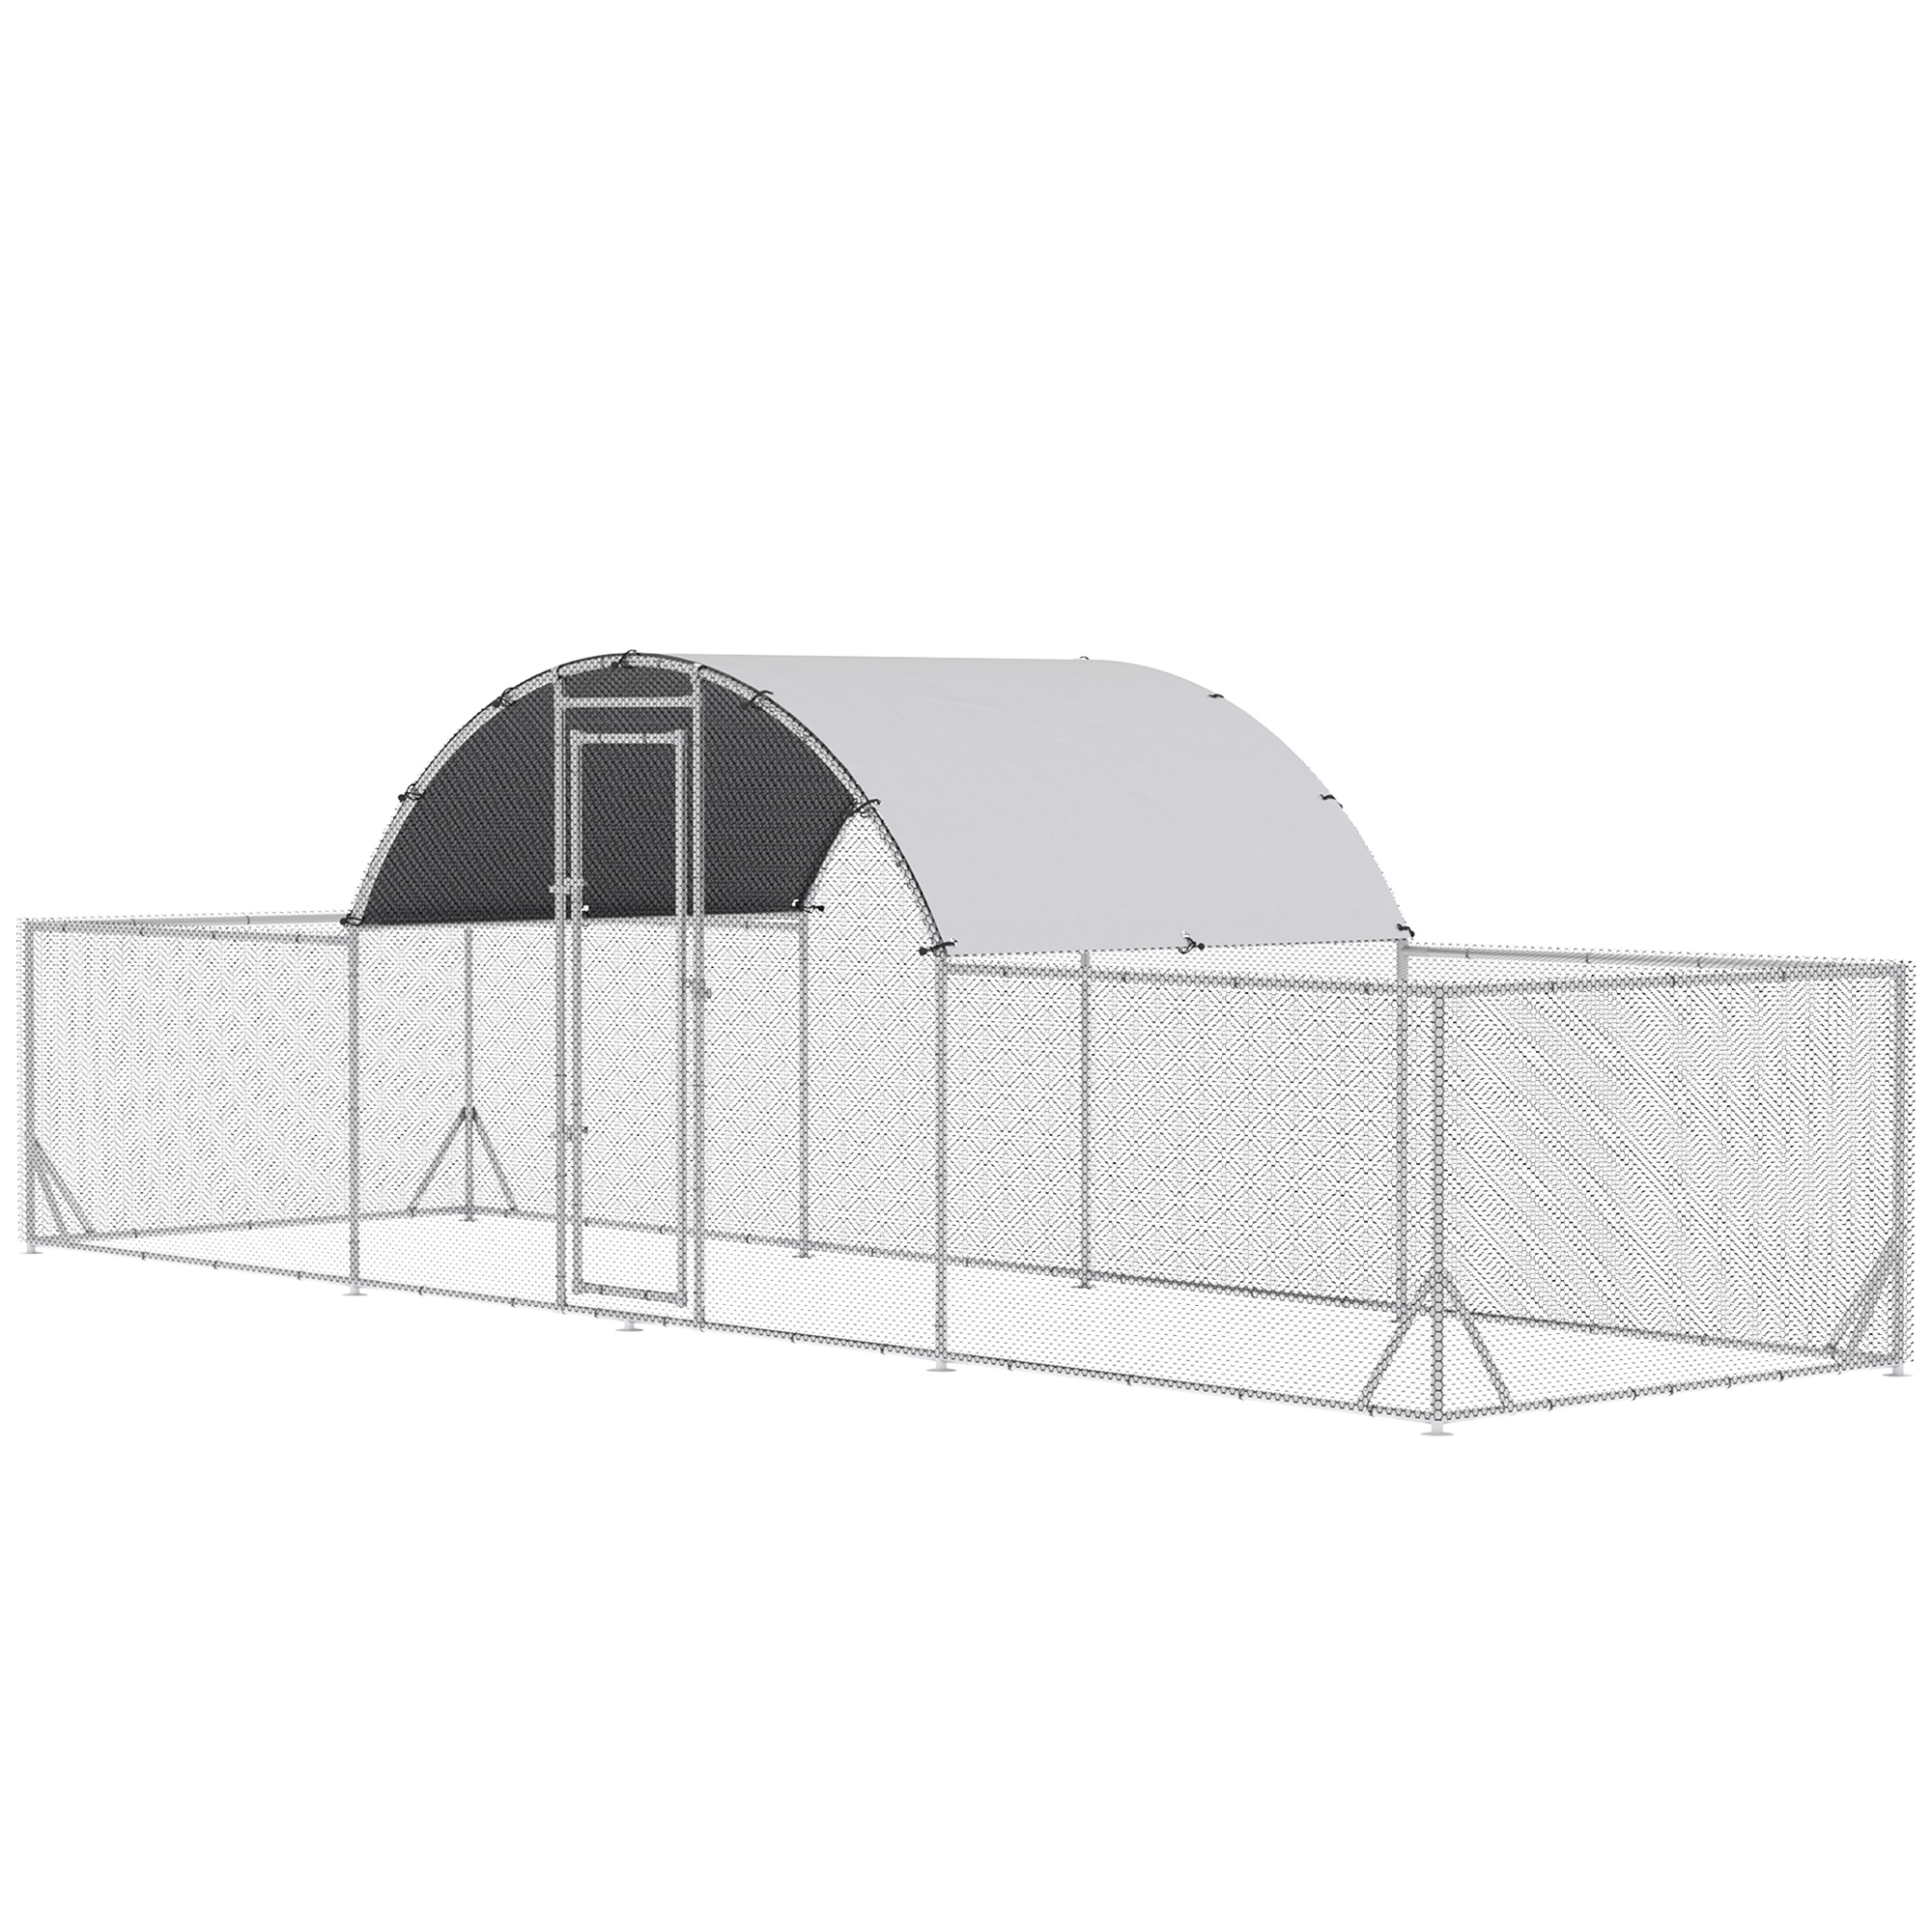 Pawhut - PawHut Gallinero Exterior de Acero Galvanizado 6,6x1,9x1,95 m Jaula para 12-14 Gallinas al Aire Libre con 3 Pisos Techo Cubierta de Tela y Corral para Conejos Aves Plata